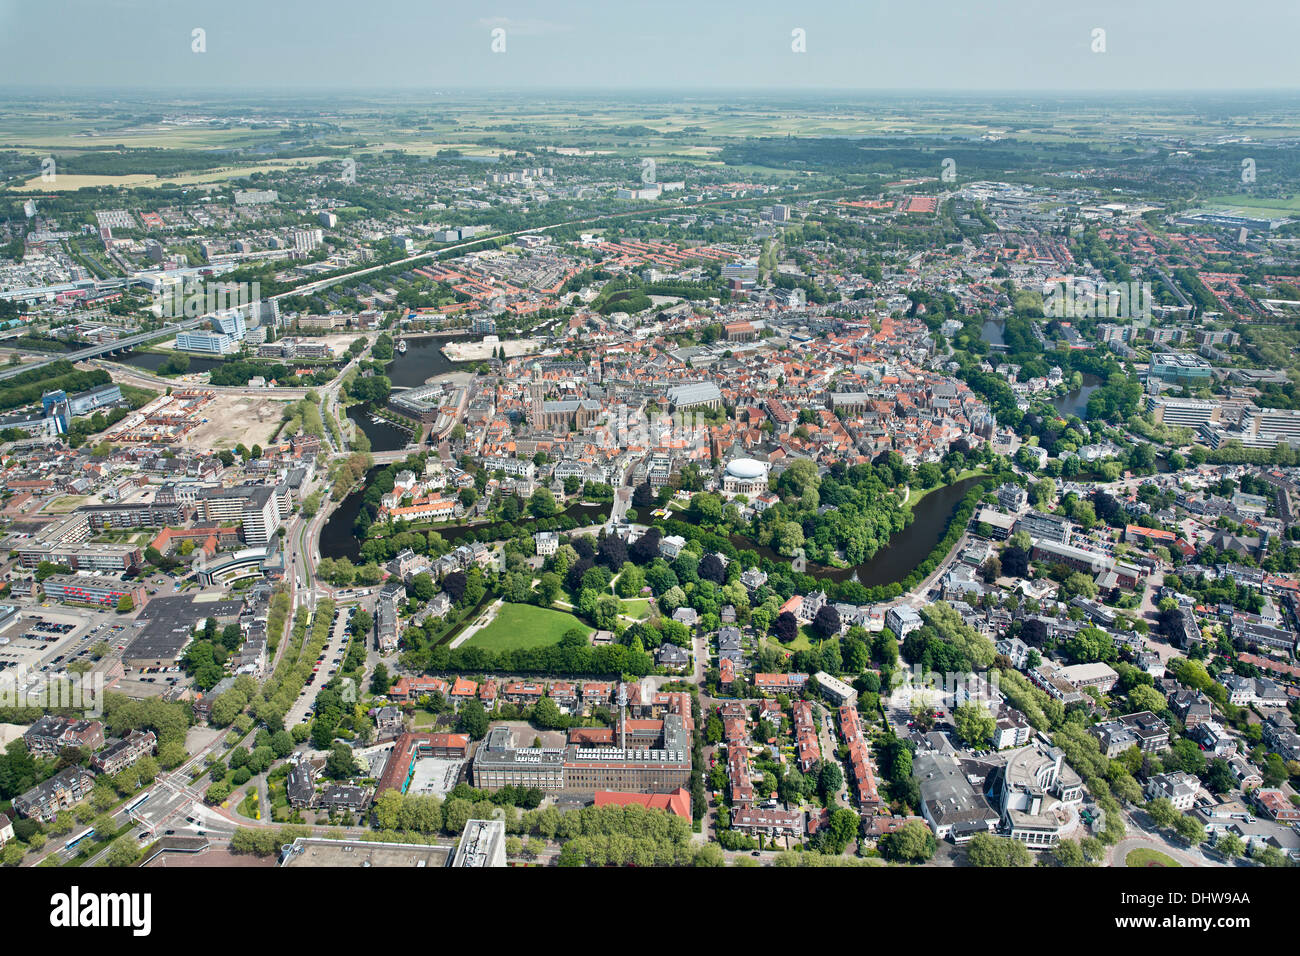 Holland, Zwolle, centre-ville, le musée de Fundatie, extension sur le toit ressemble à ballon de rugby. Bierman Henket architecten. Aerial Banque D'Images